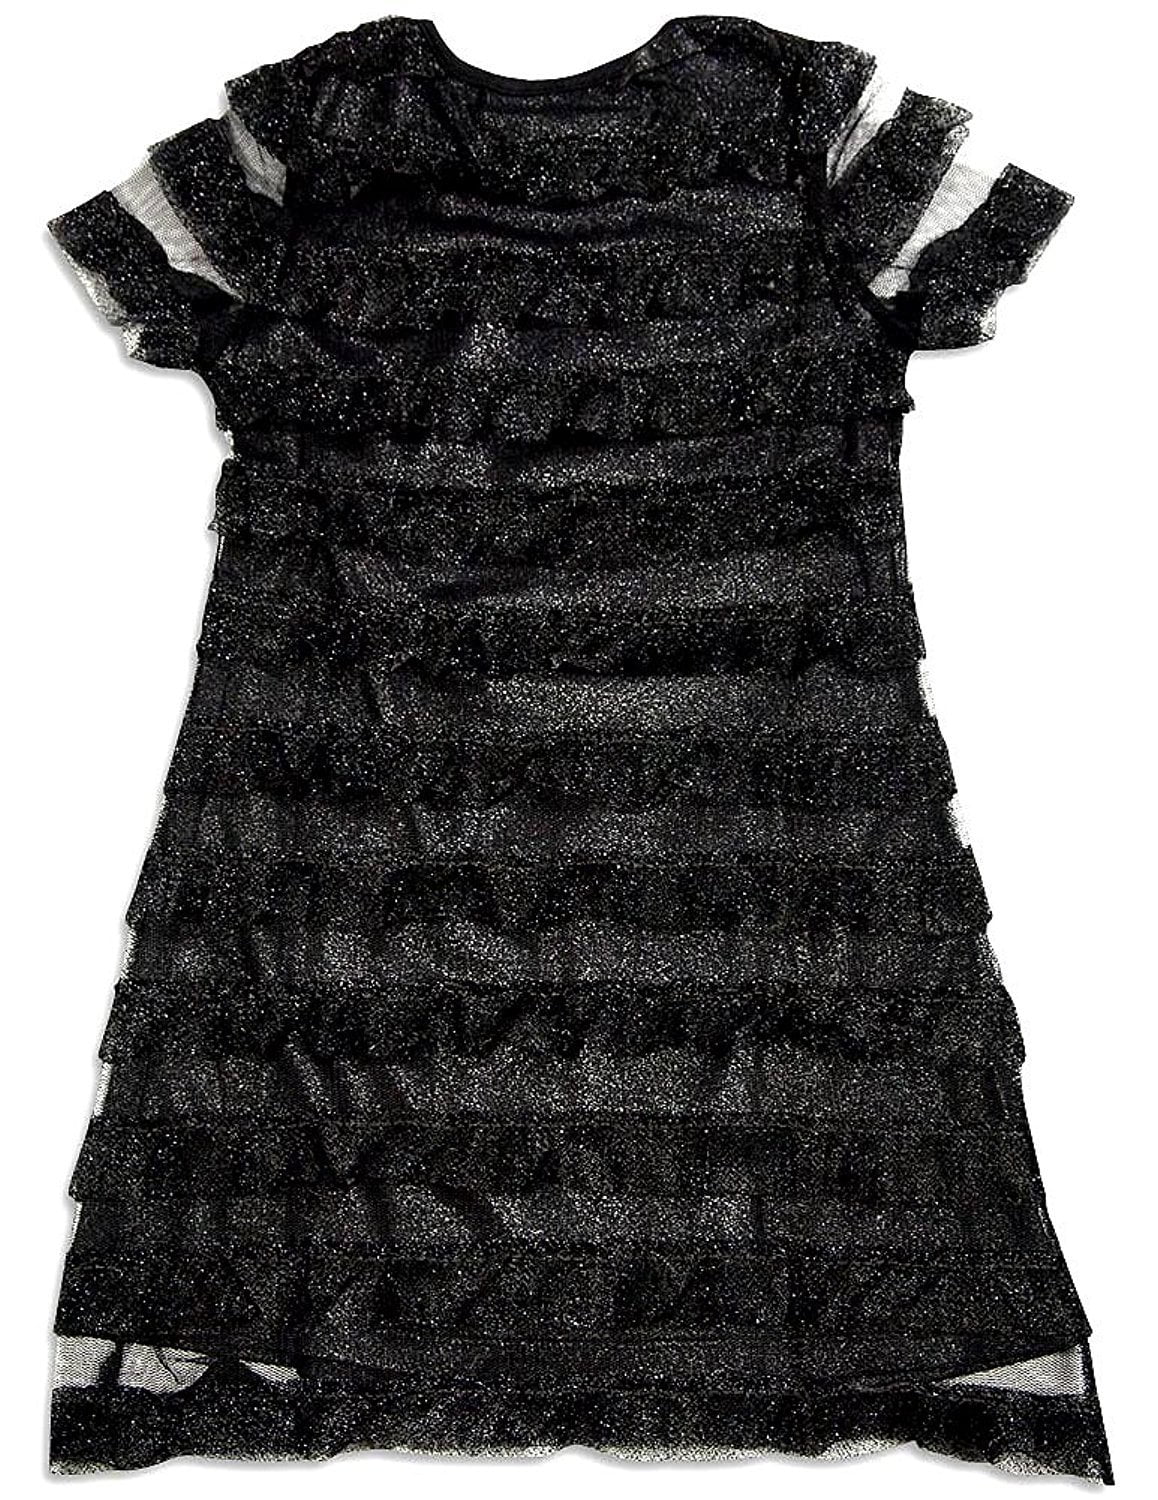 3t black dress